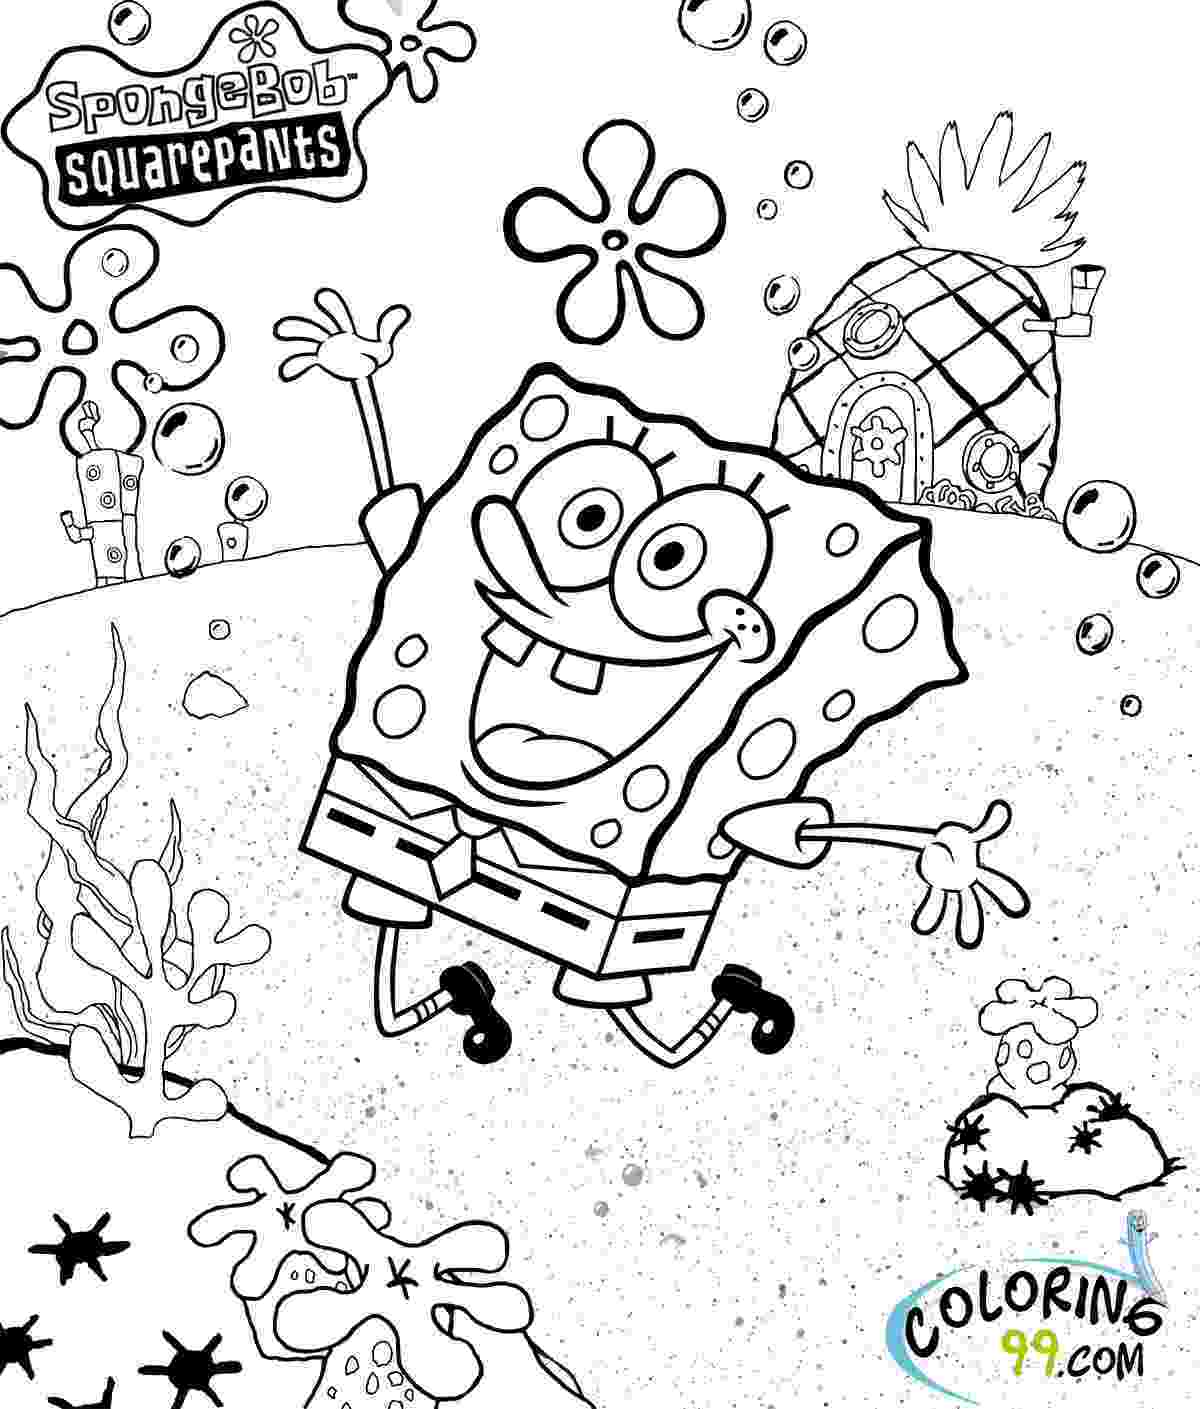 spongebob squarepants coloring pages best spongebob squarepants memes coloring pages and squarepants coloring pages spongebob 